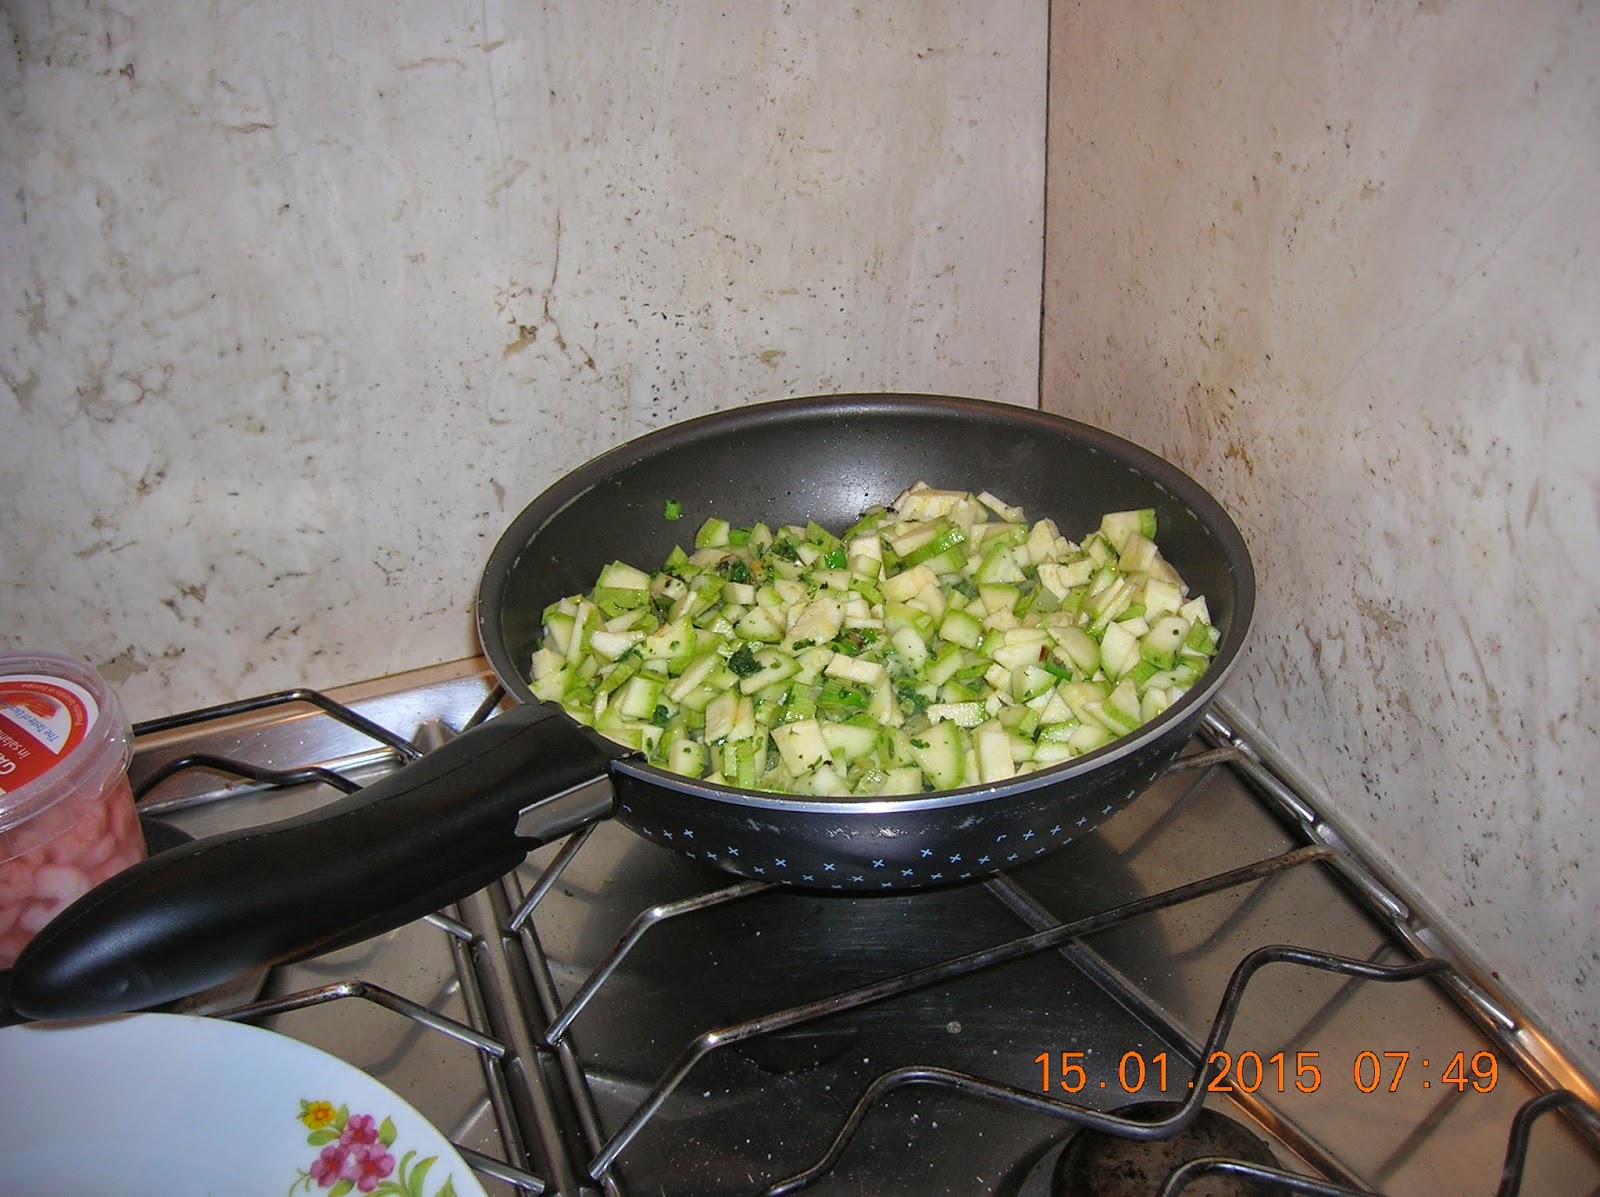 flan di zucchine- cornetti salati  in pasta brisee' farciti  con prosciutto cotto e formaggio 